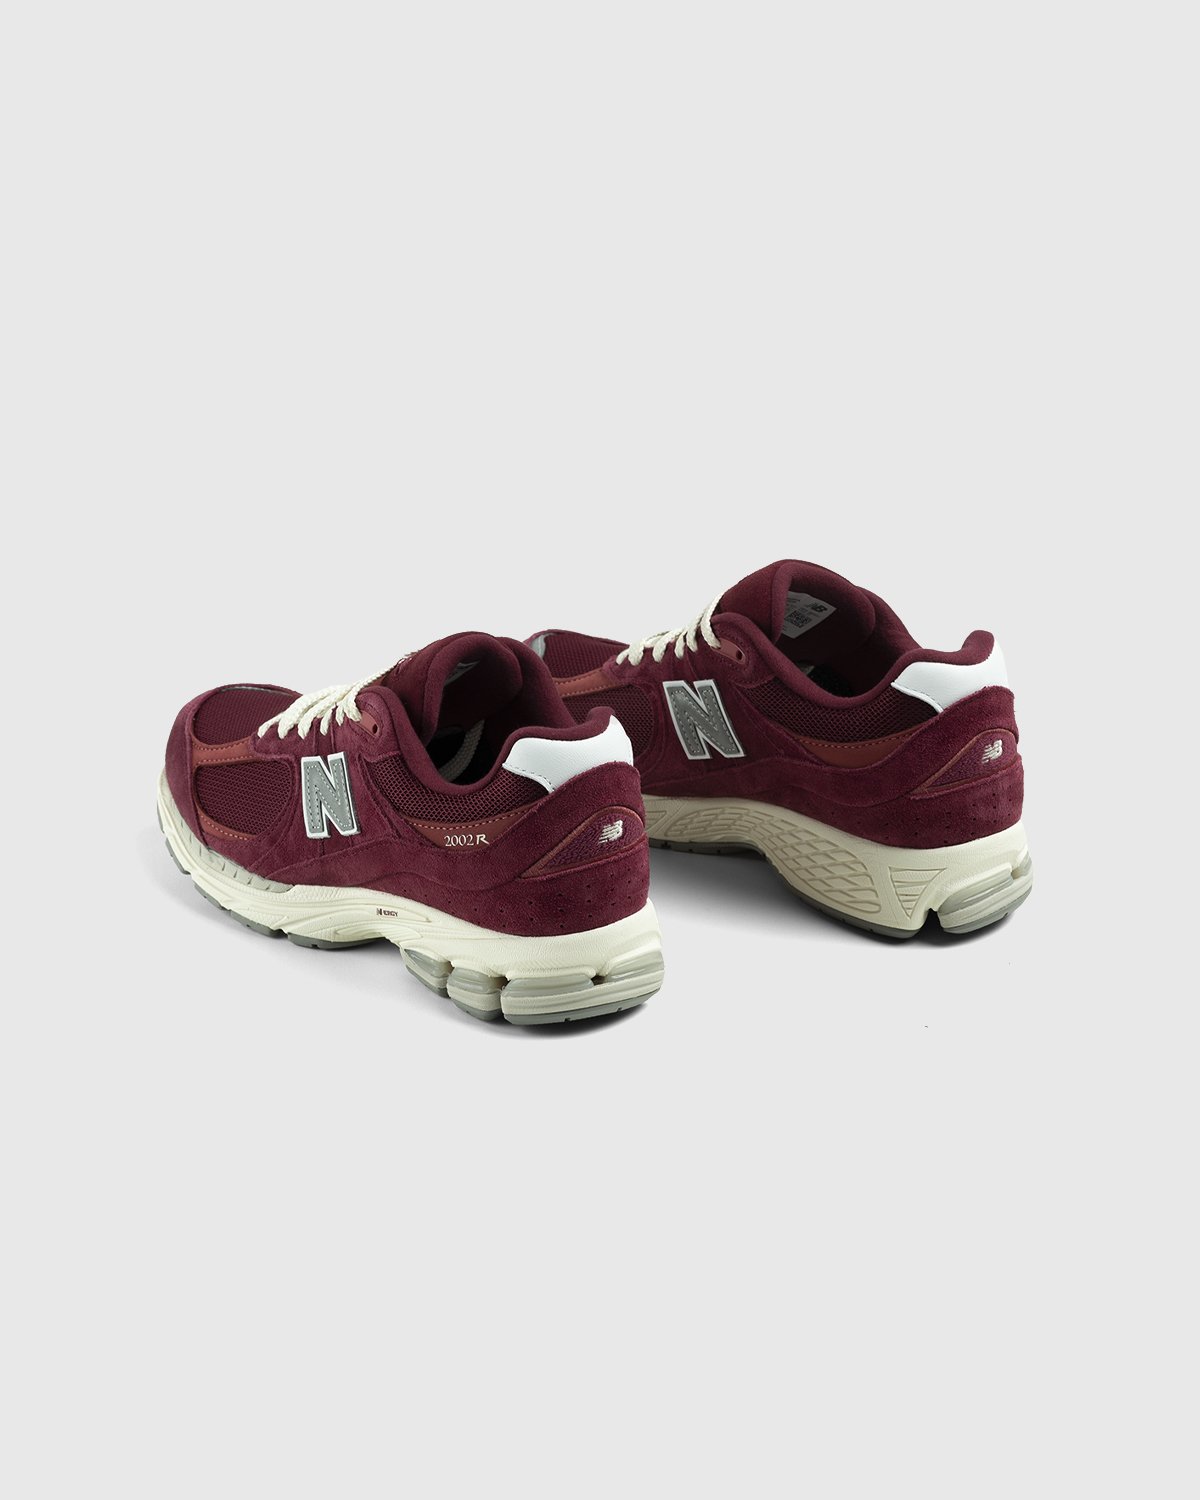 New Balance - M2002RHA Garnet - Footwear - Red - Image 4